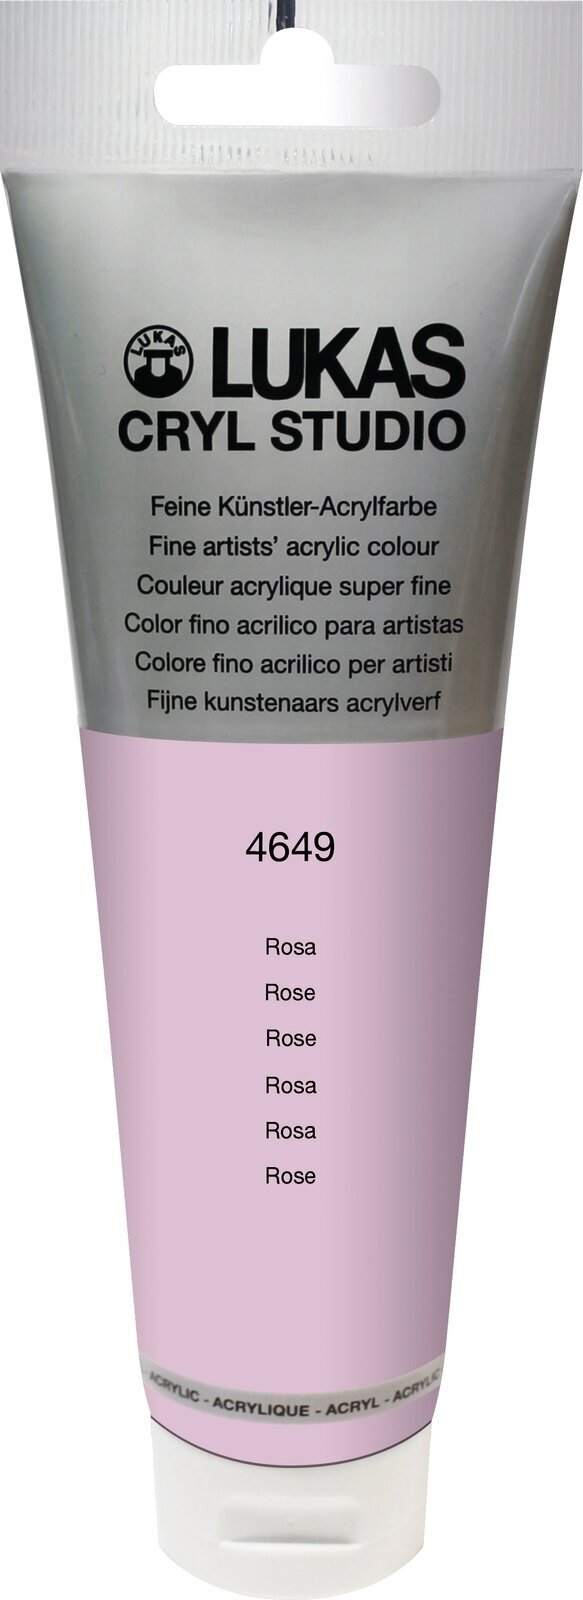 Akrylová farba Lukas Cryl Studio Acrylic Paint Plastic Tube Akrylová farba Rose 125 ml 1 ks